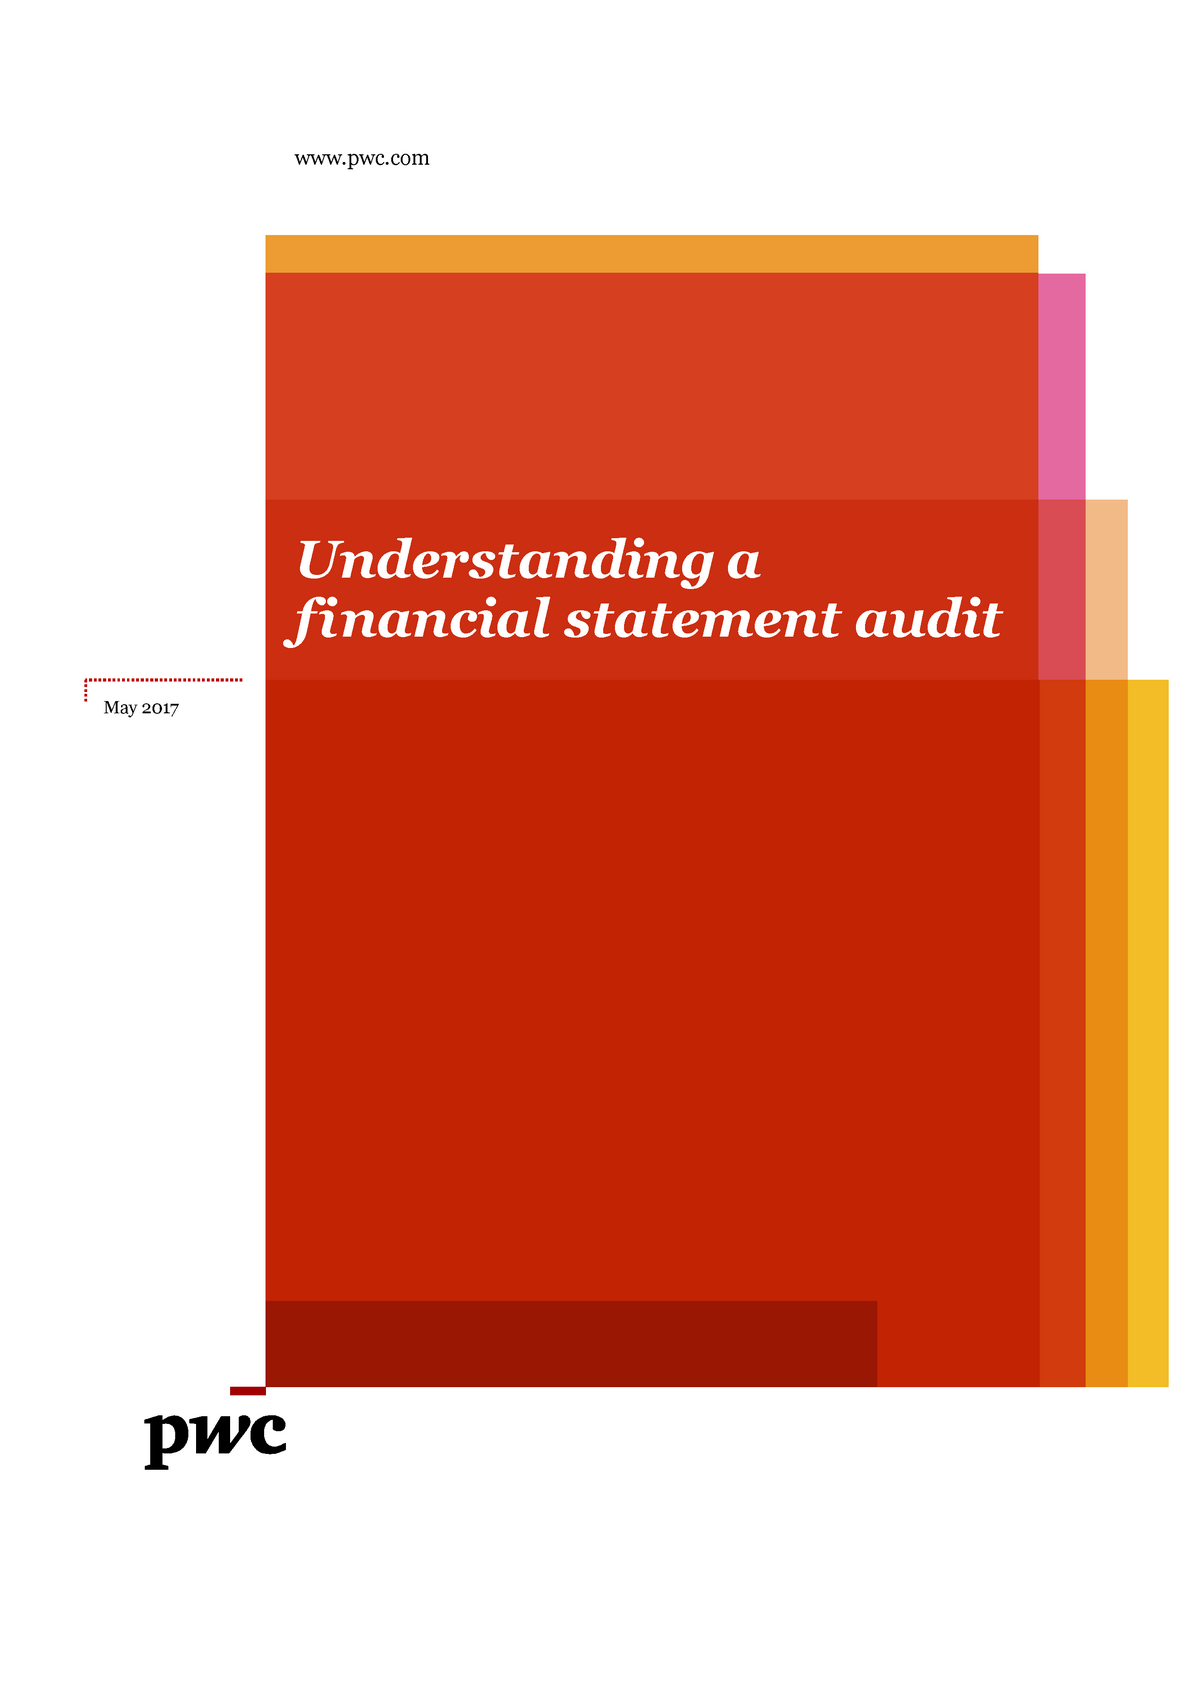 pwc financial statement presentation guide pdf